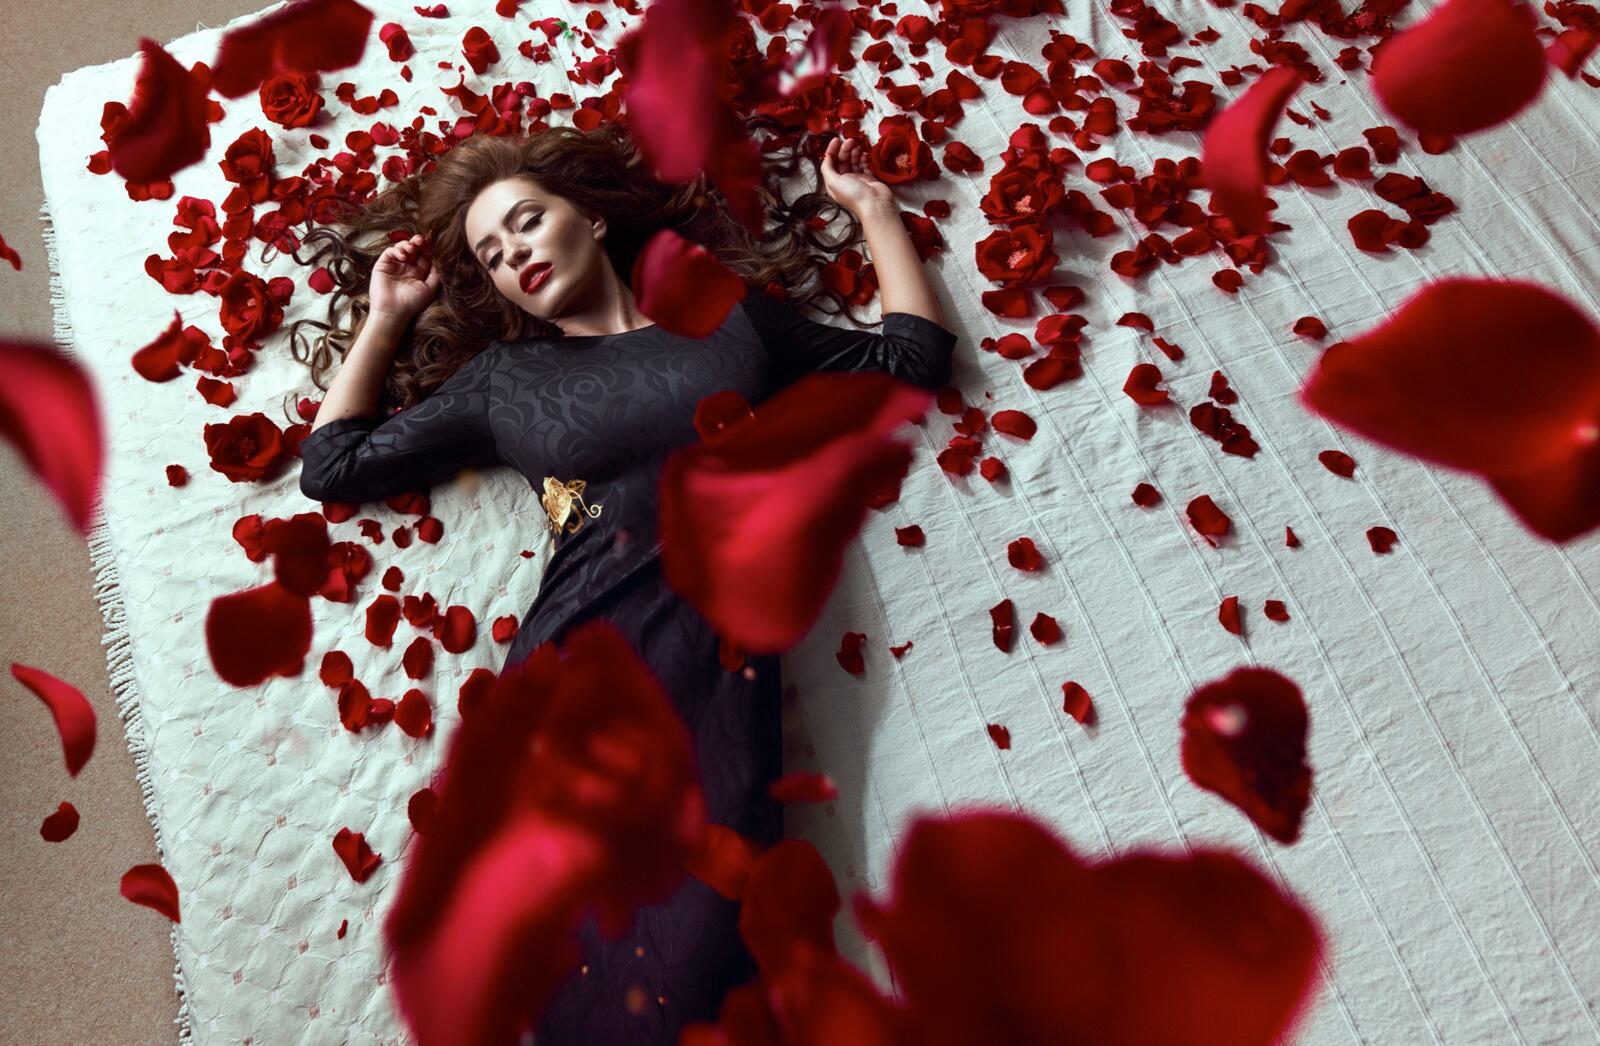 Бесплатное фото Девушка в черном платье под красными лепестками роз